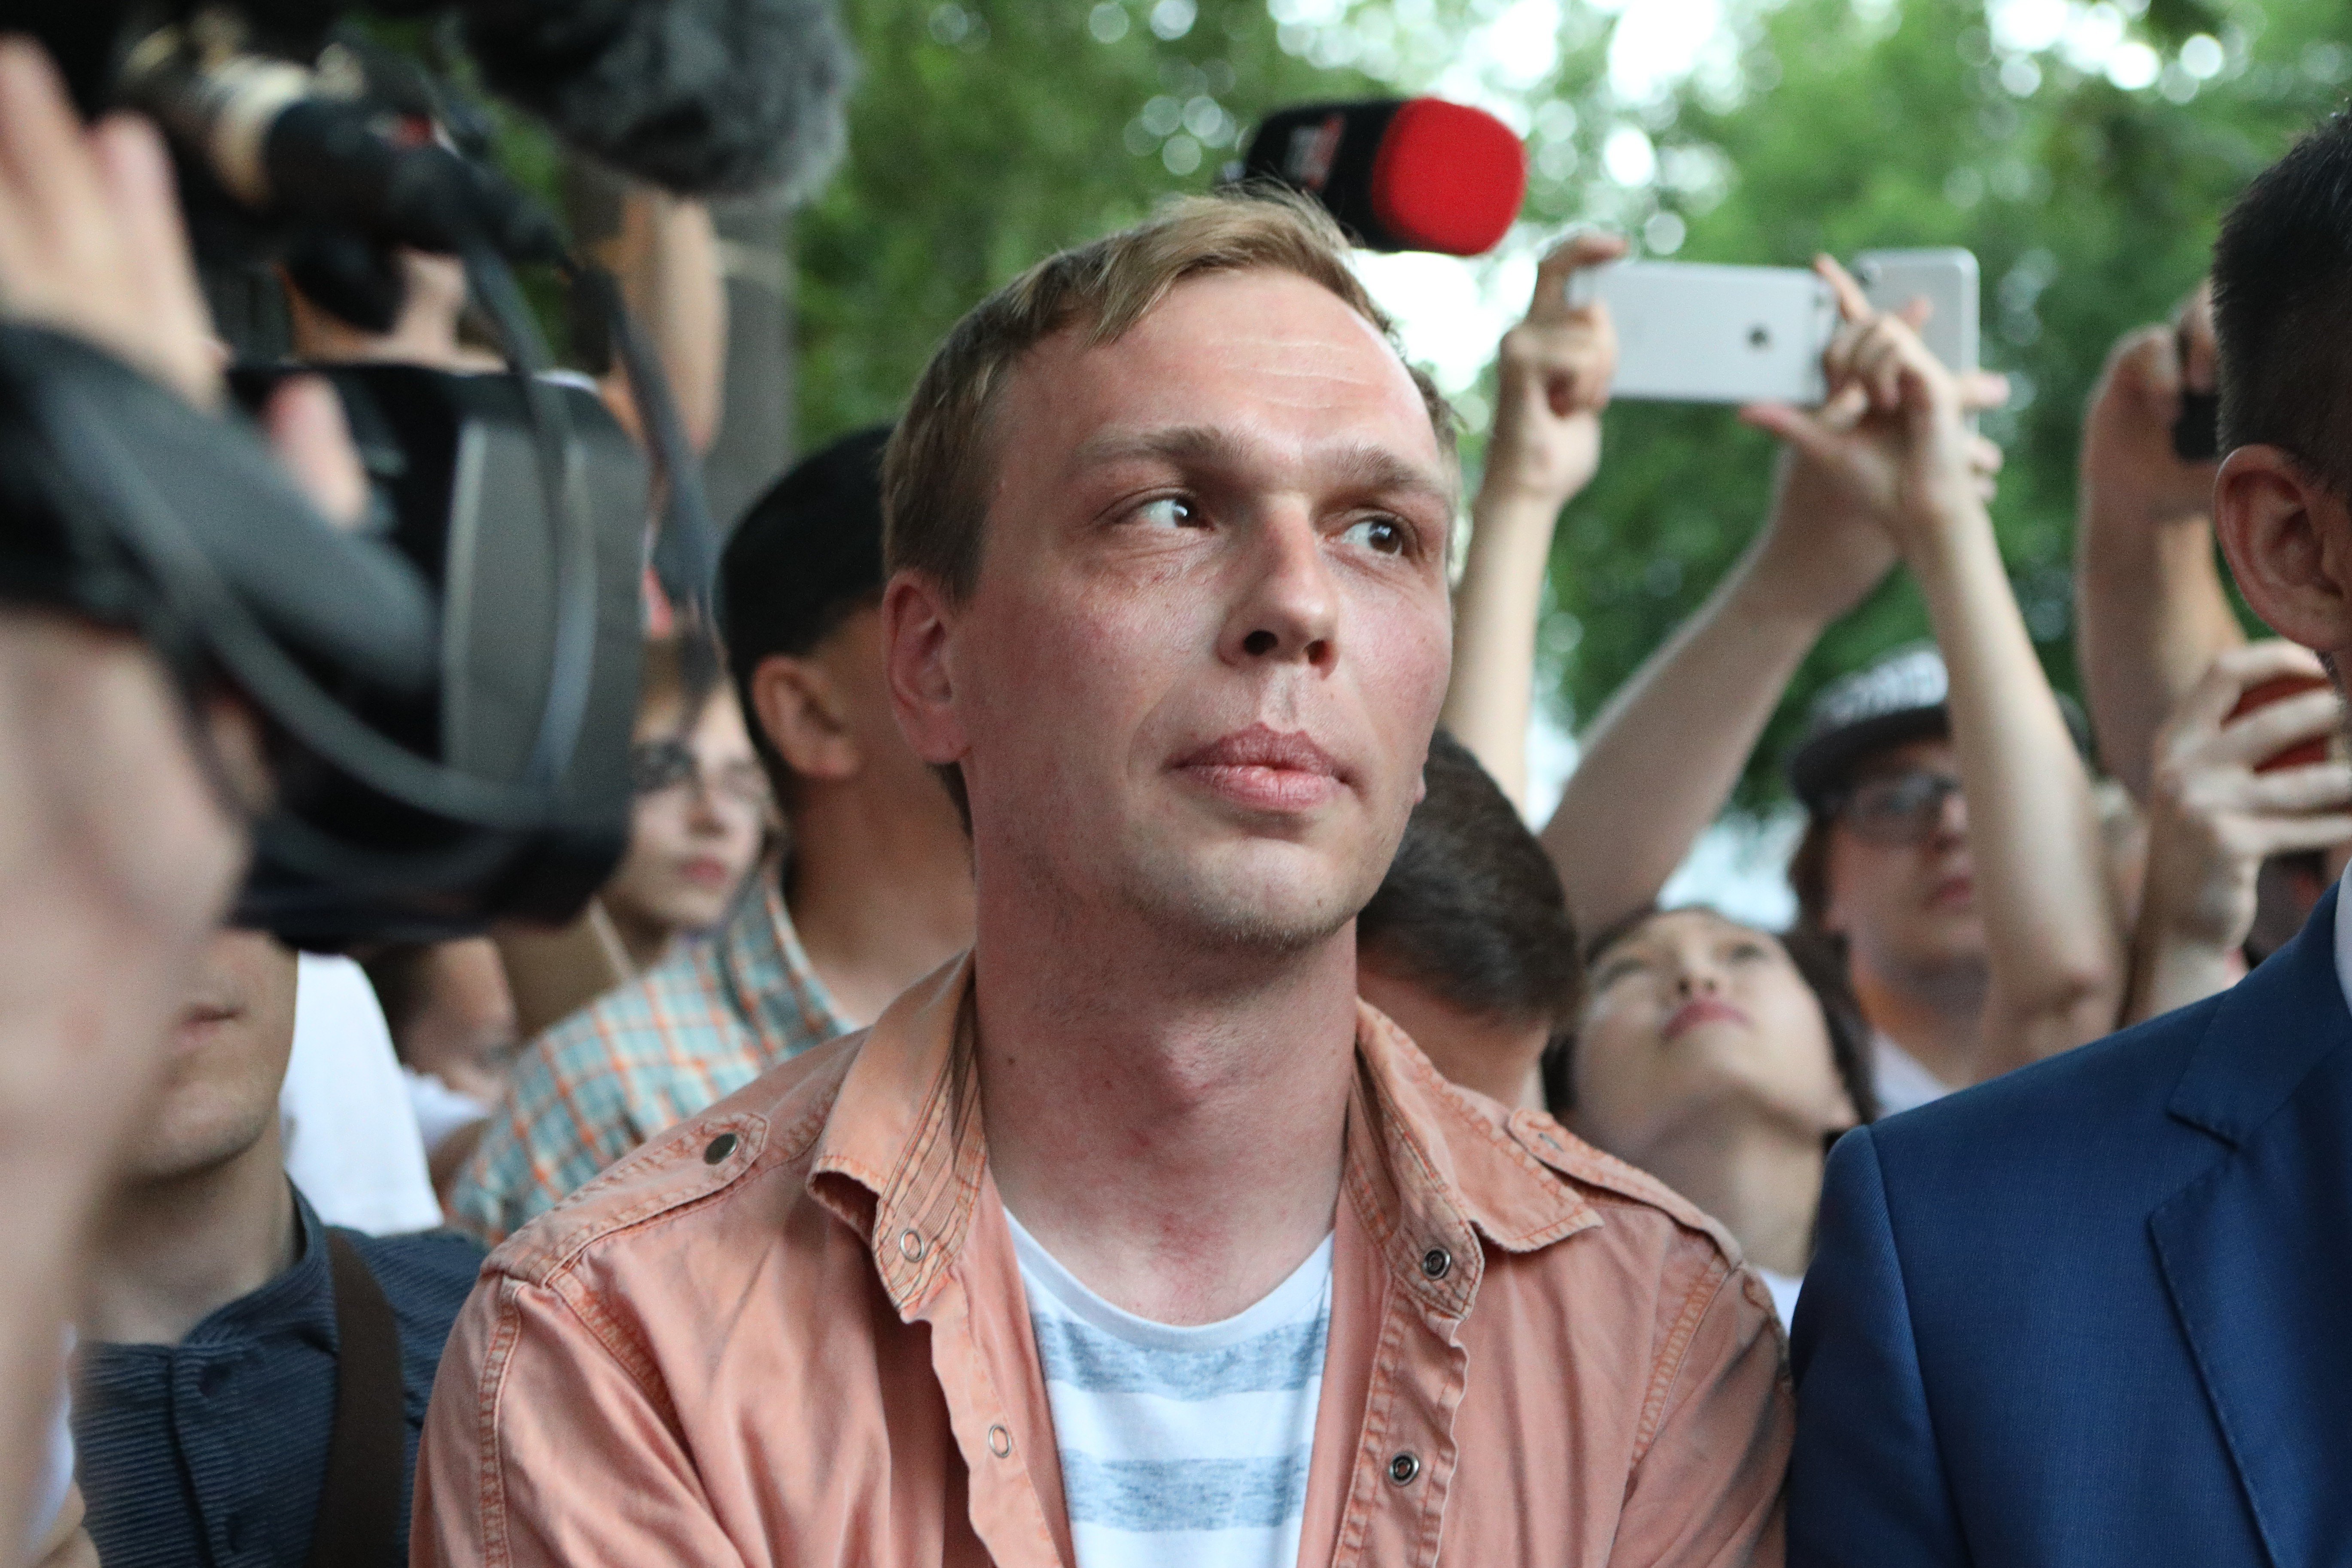 Ранее журналист «Медузы» сообщил, что его признали потерпевшим по делу о превышении полномочий сотрудниками полиции Фото: © Global Look Press / City News Moskva